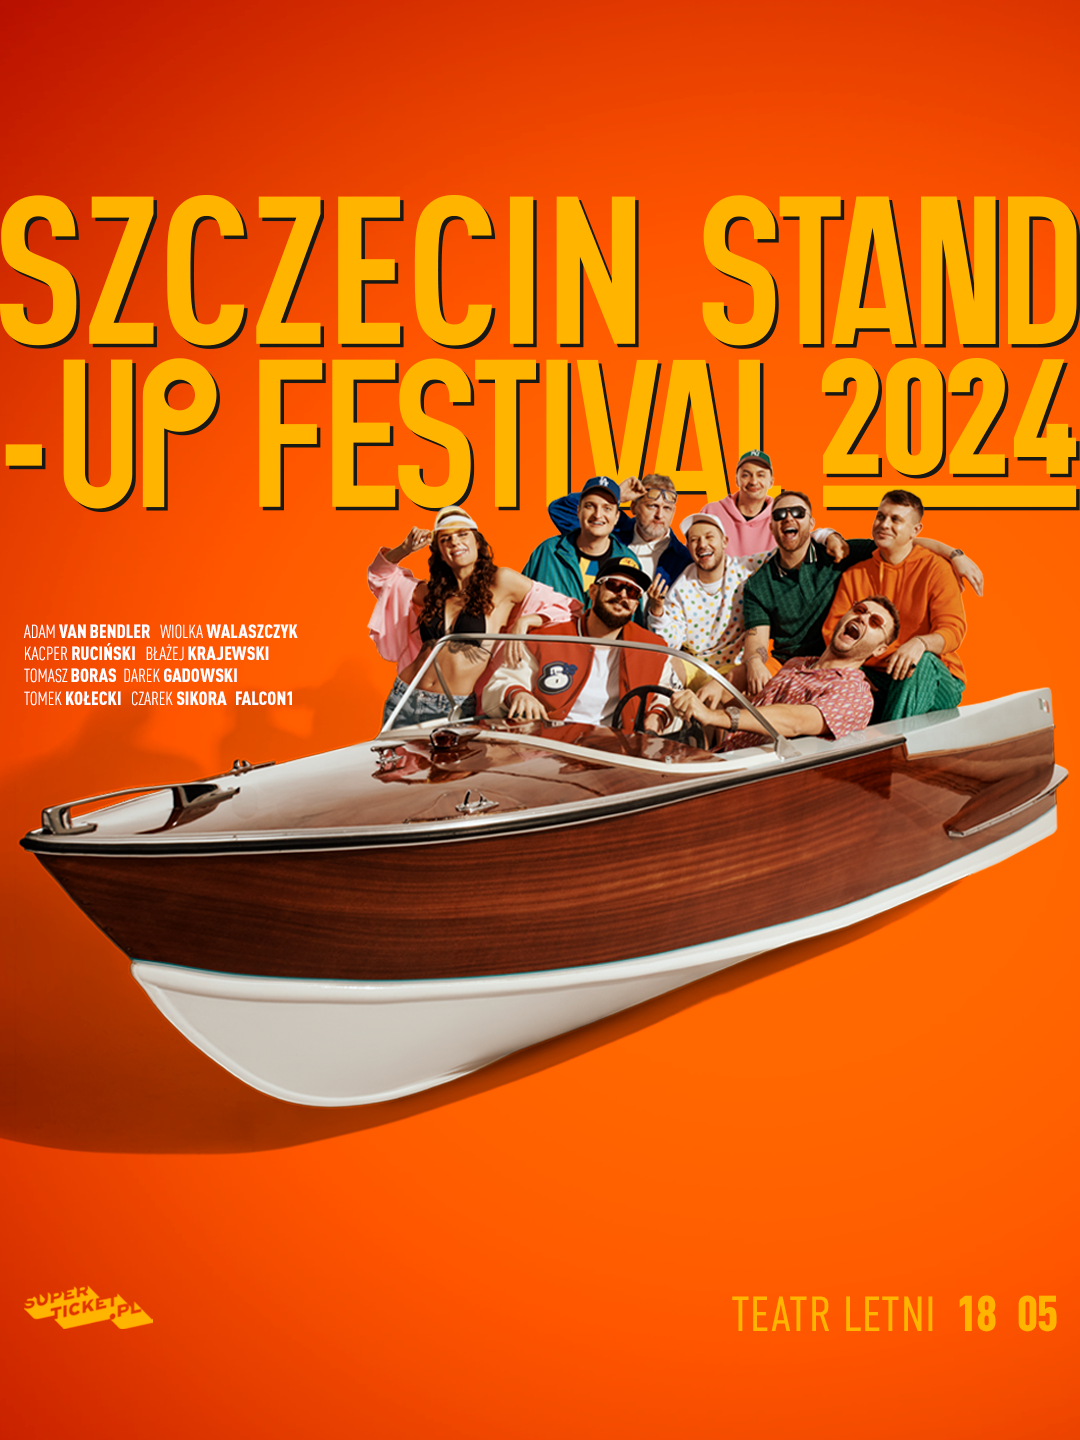 Szczecin Stand-up Festival™ 2024